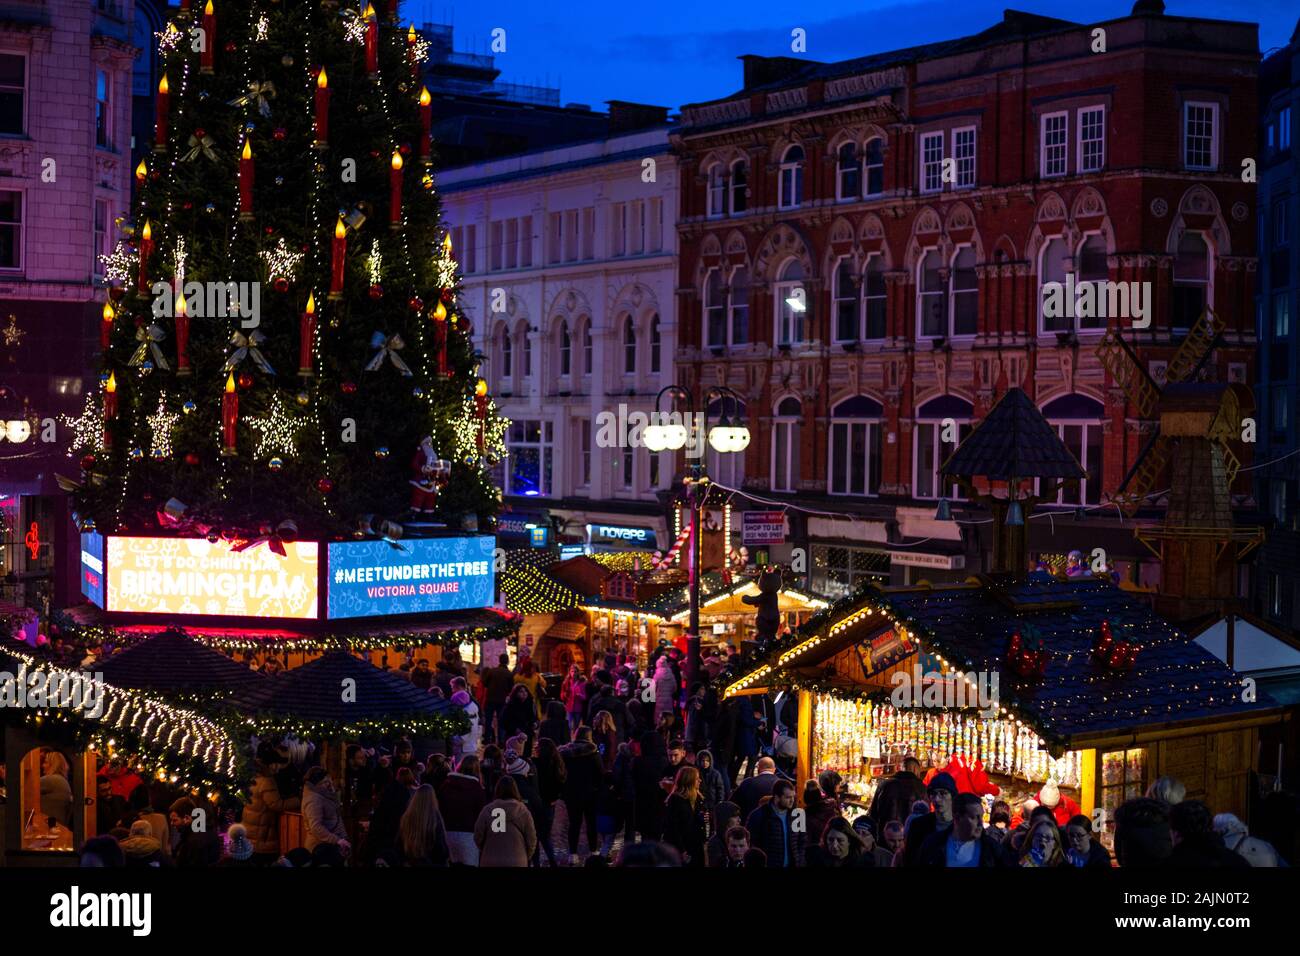 BIRMINGHAM, Großbritannien - 15 Dezember, 2019: Victoria Square Weihnachtsbaum und die umliegenden Marktstände während der jährlichen Weihnachten Fraknkfurt Markt Stockfoto